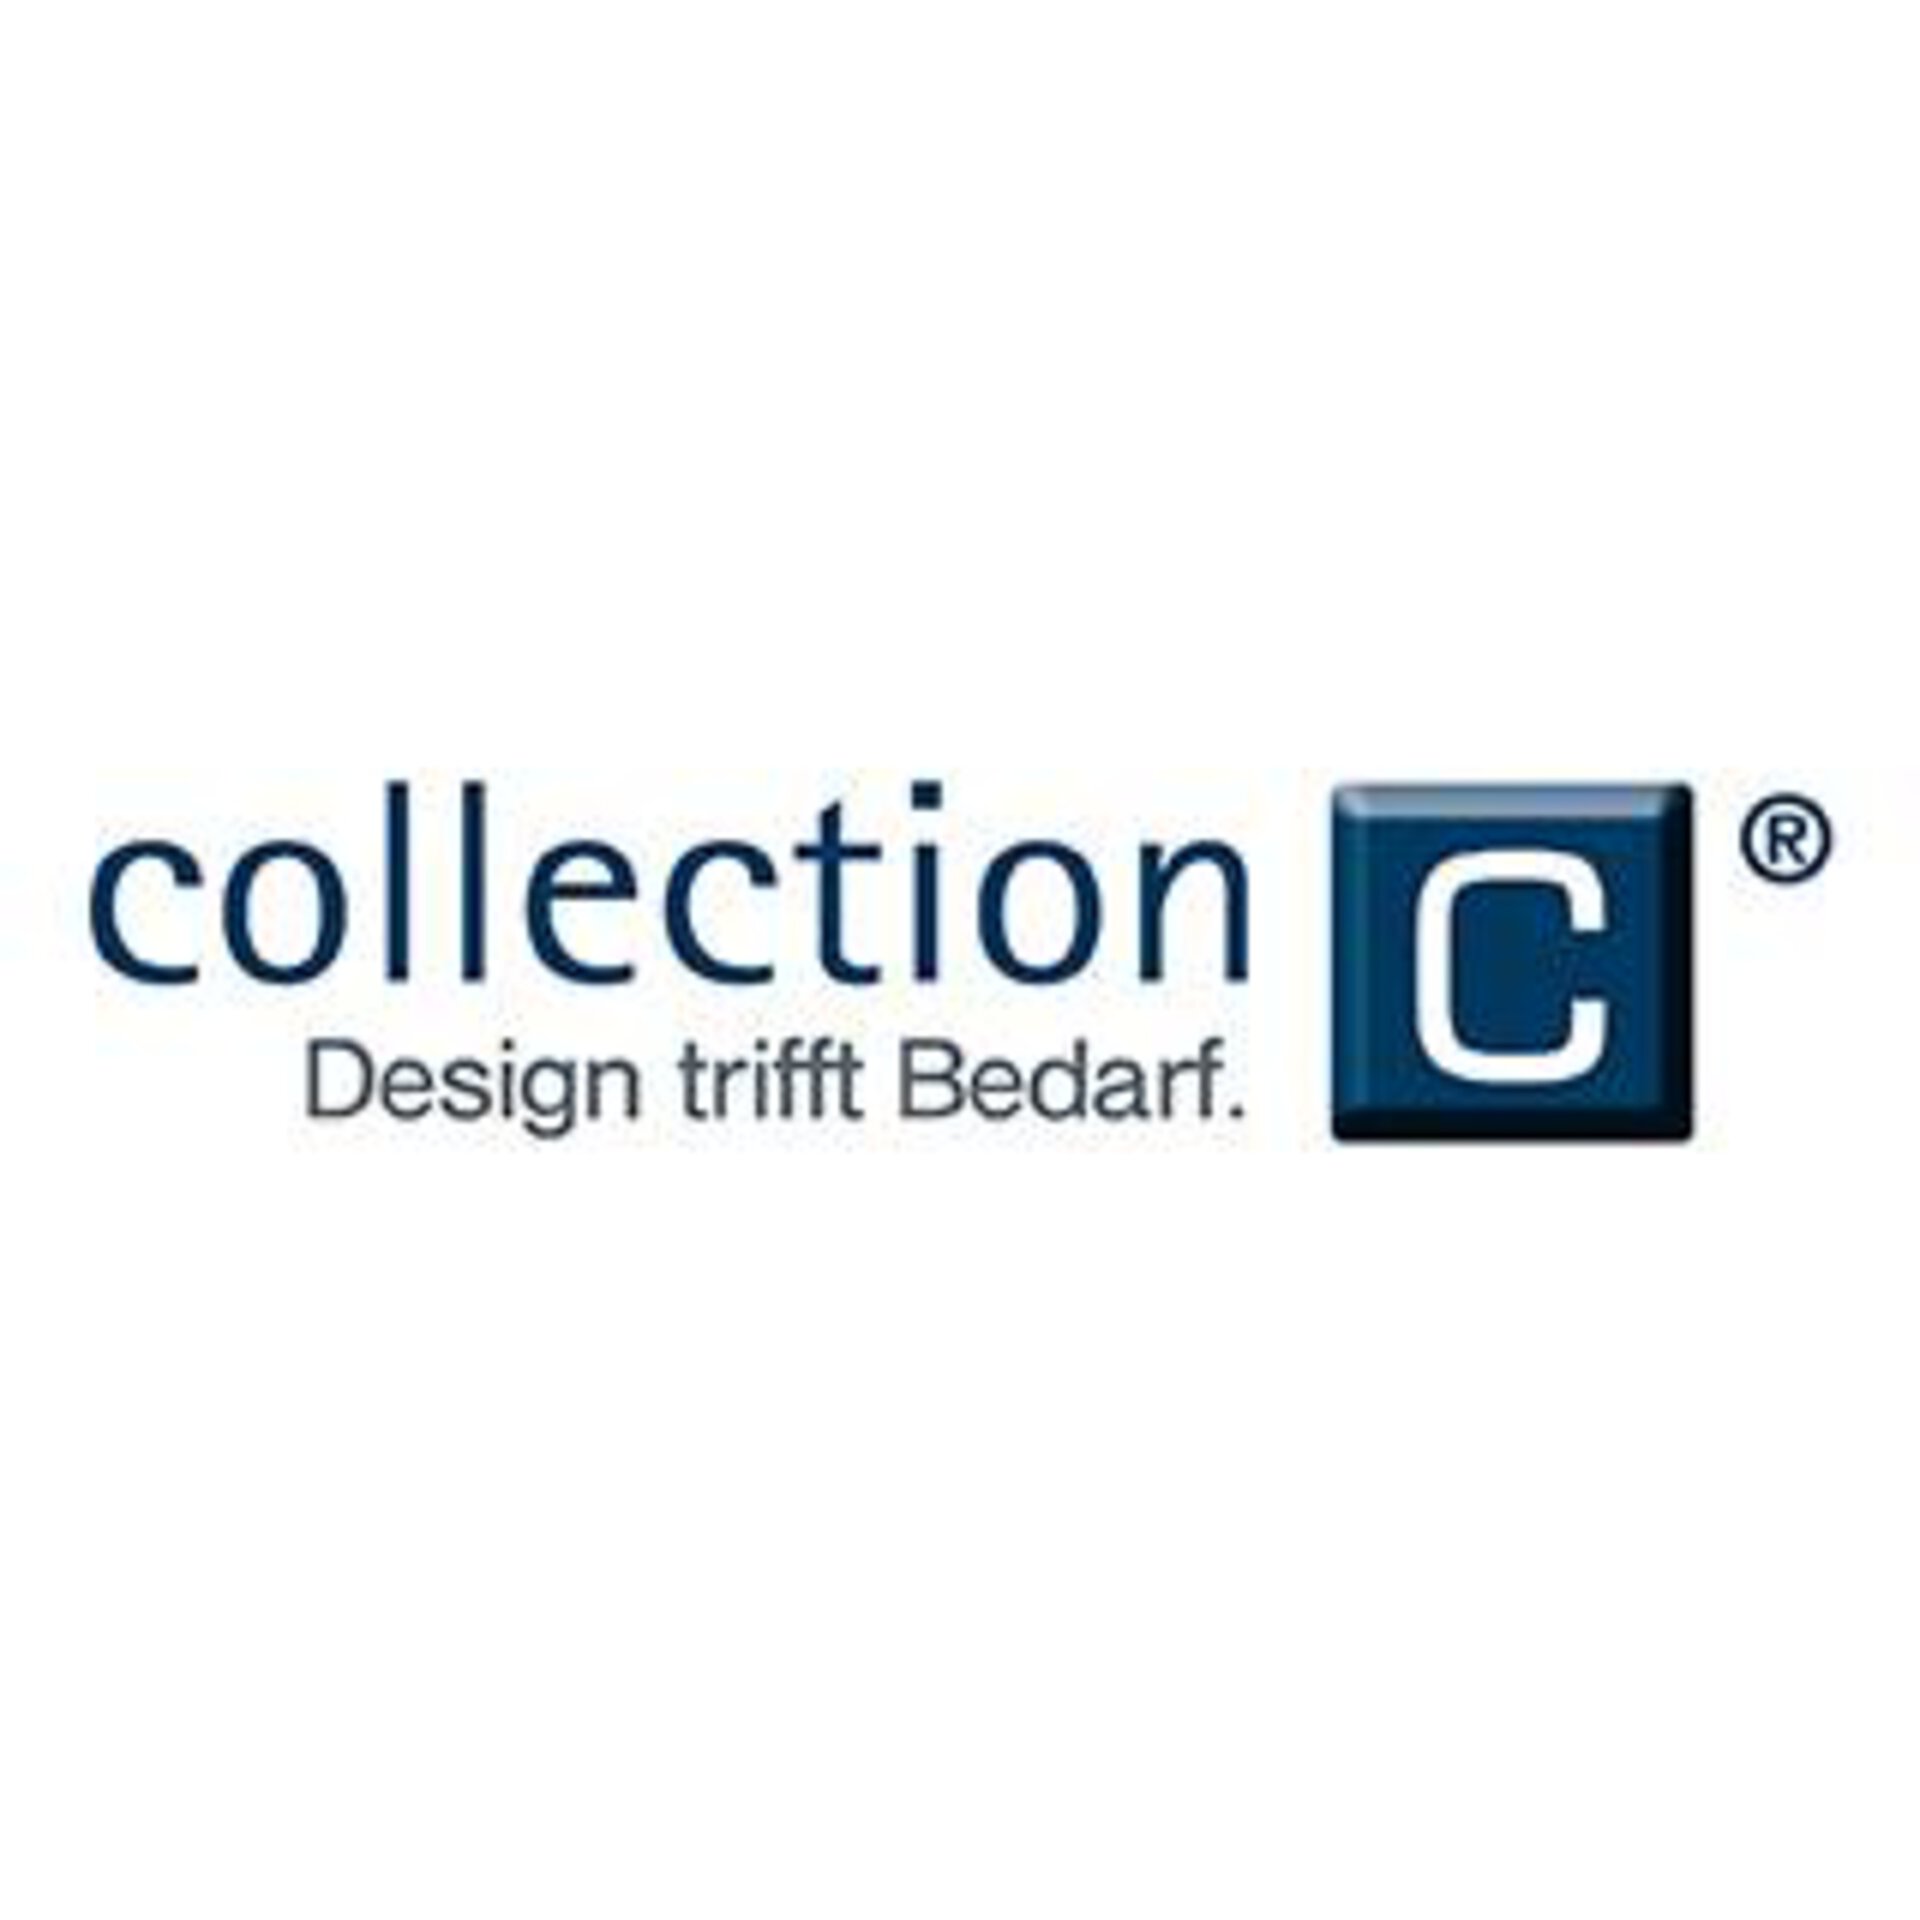 Logo "collection - Design trifft Bedarf"